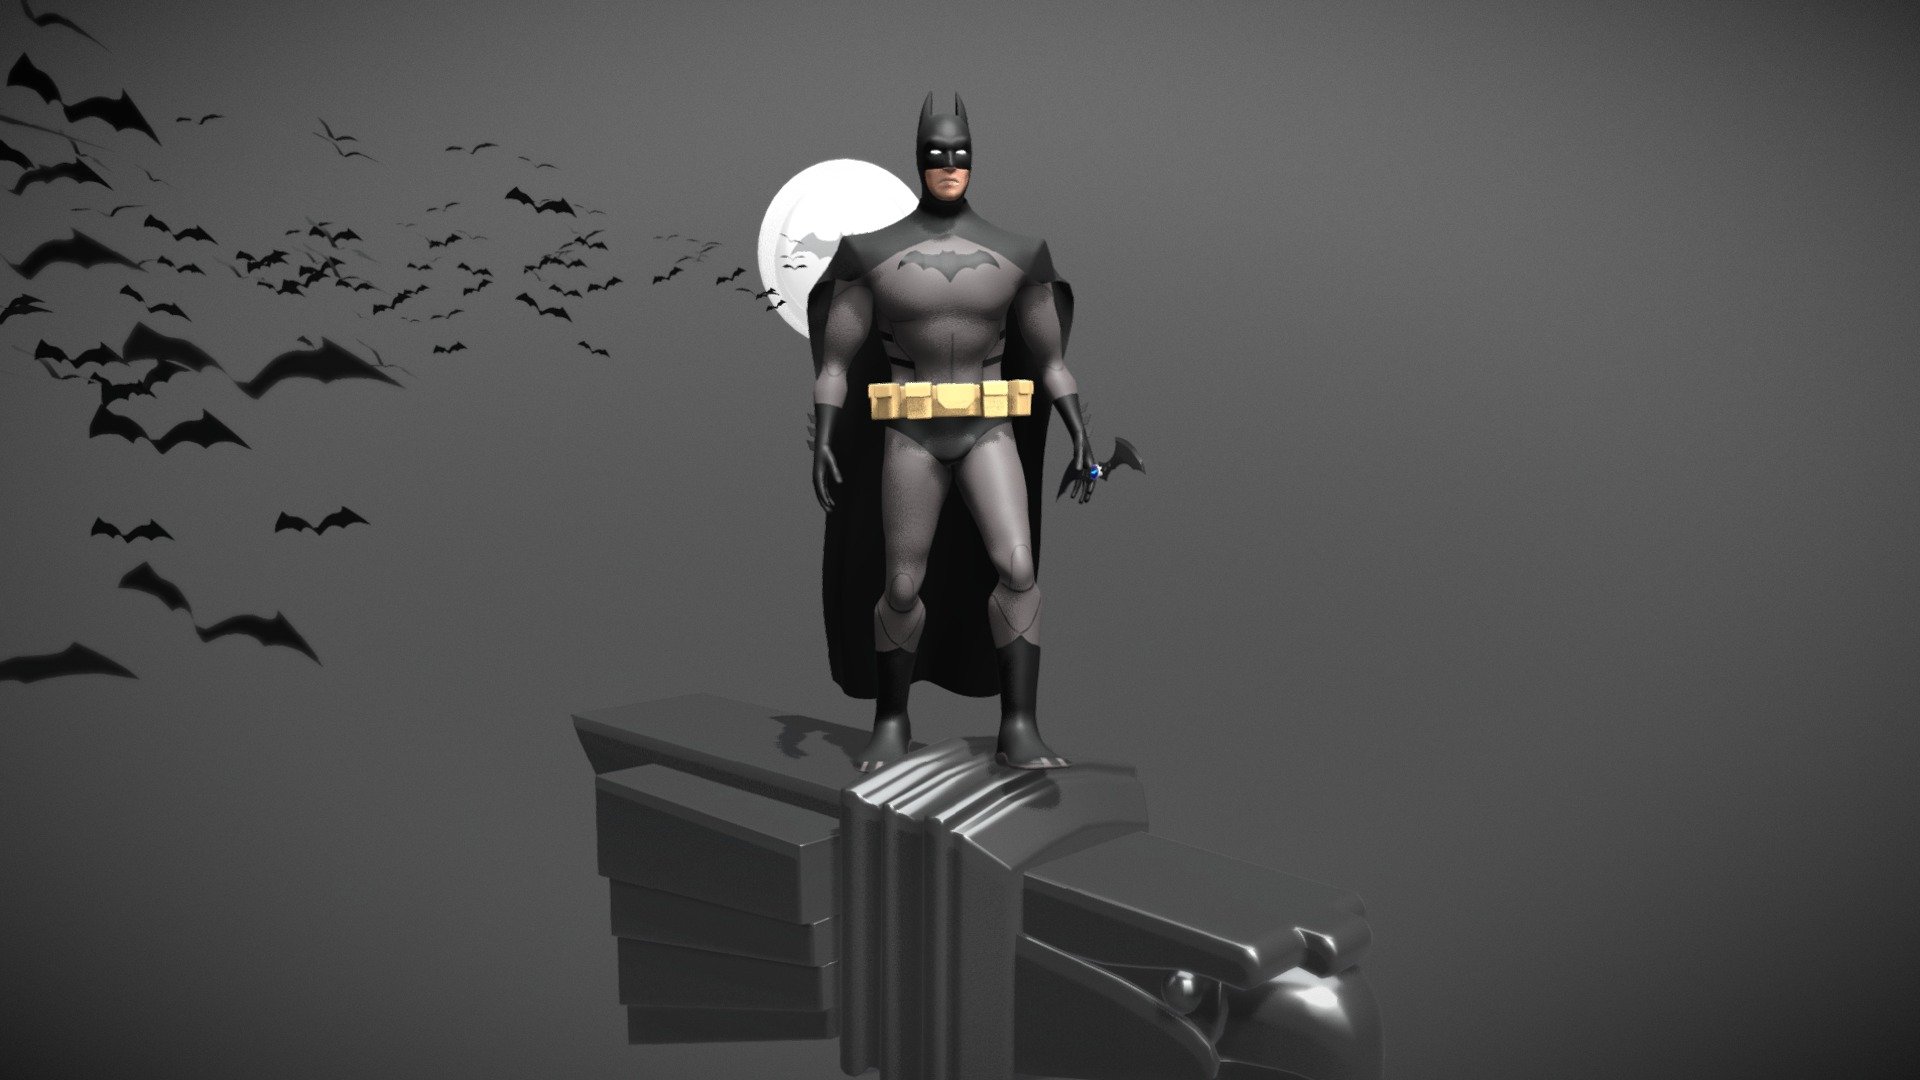 Batman/ young justice